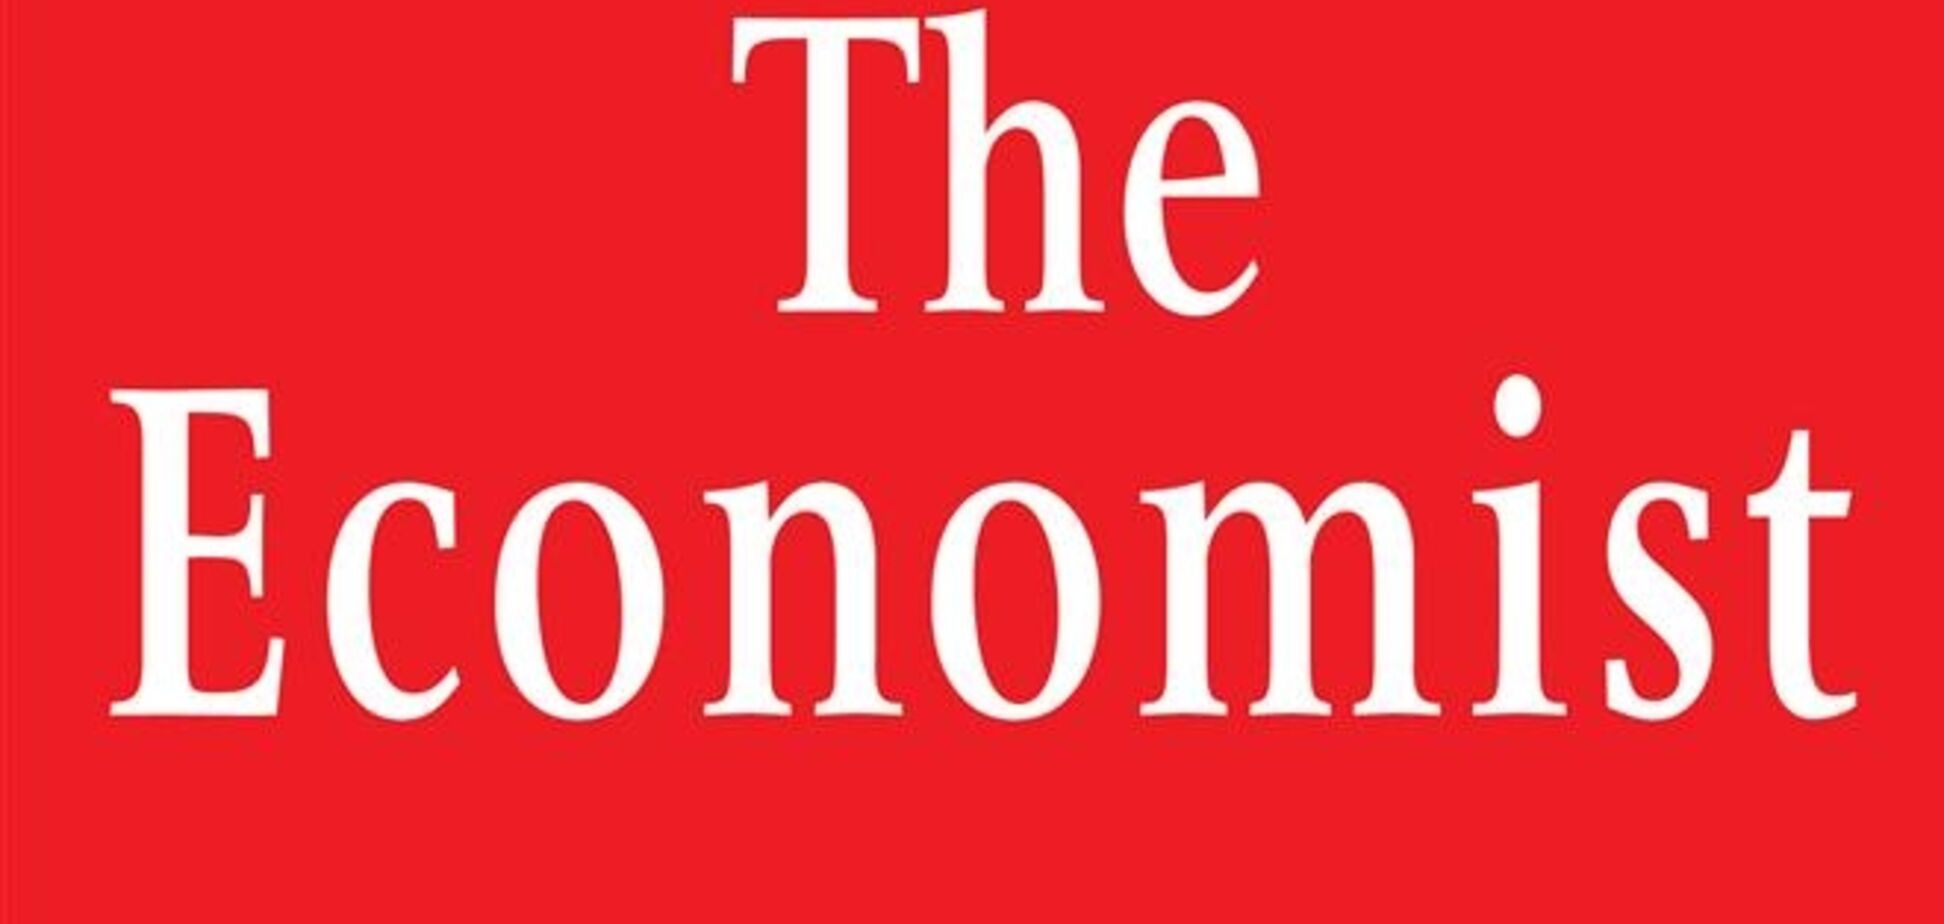 'The Economist': Янукович попытается увильнуть от обязательств, когда почувствует, что кризис прошел